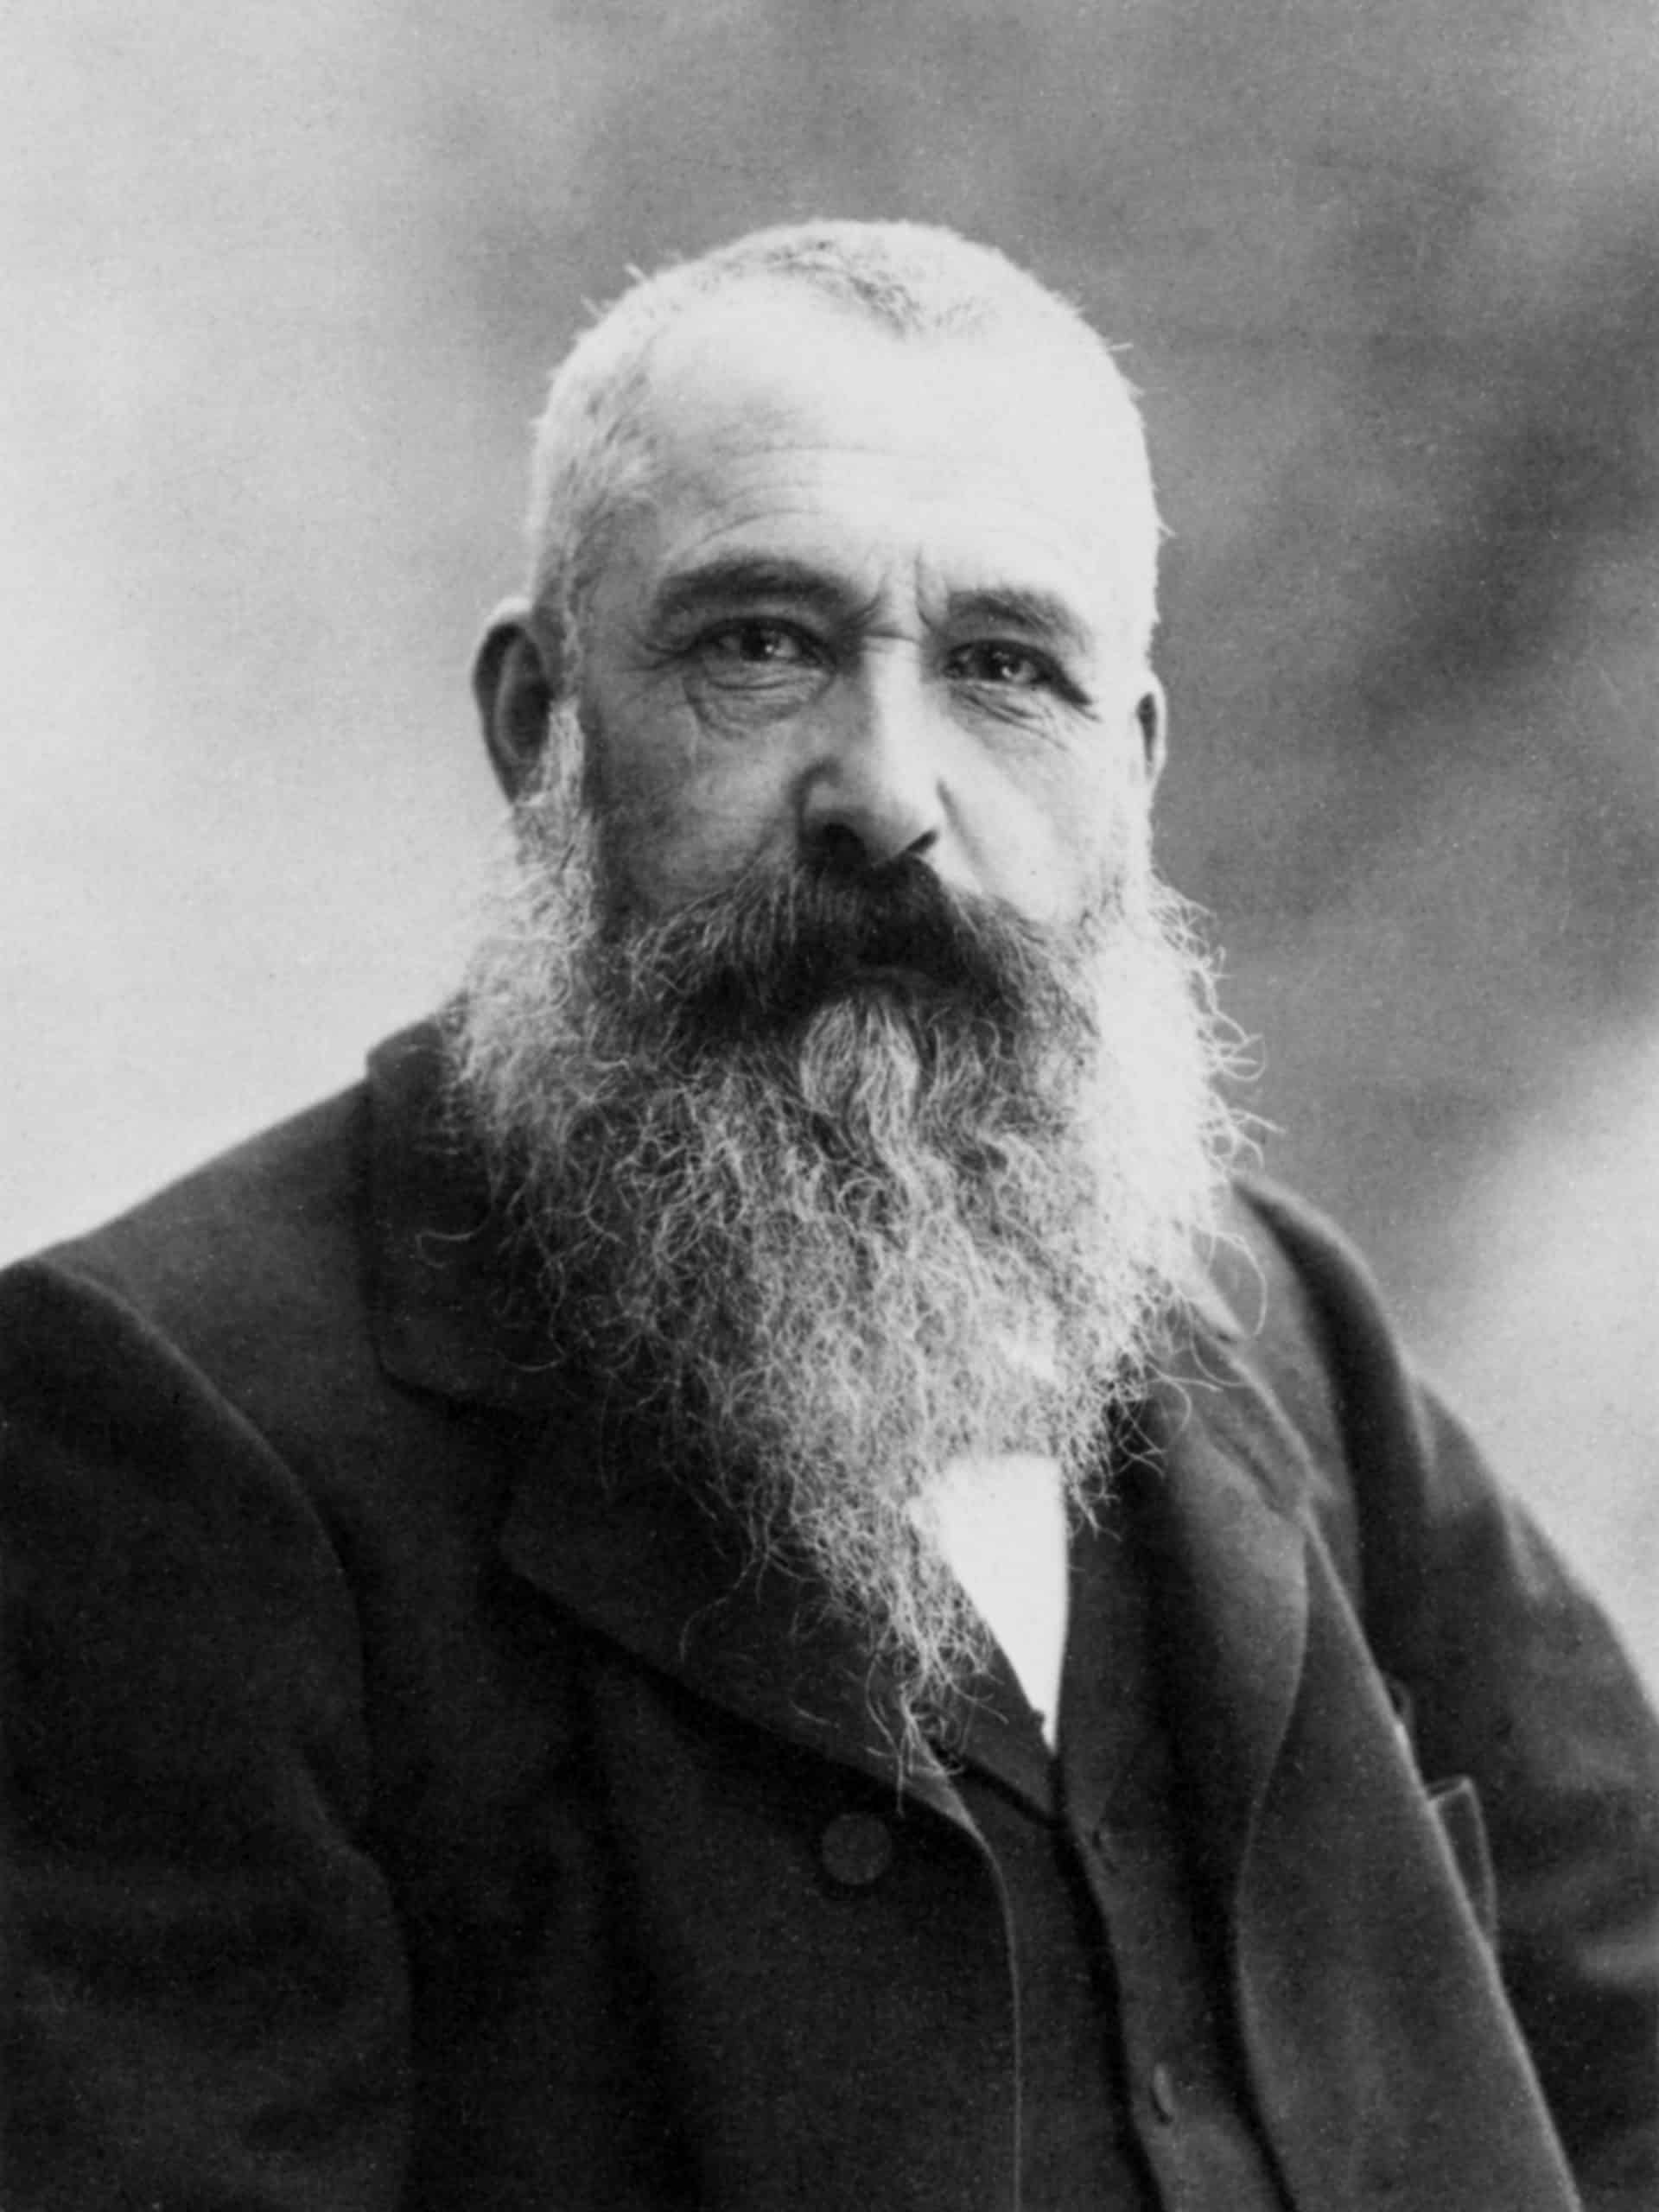 Claude Monet auf einer Aufnahme von Nadar aus dem Jahr 1899.